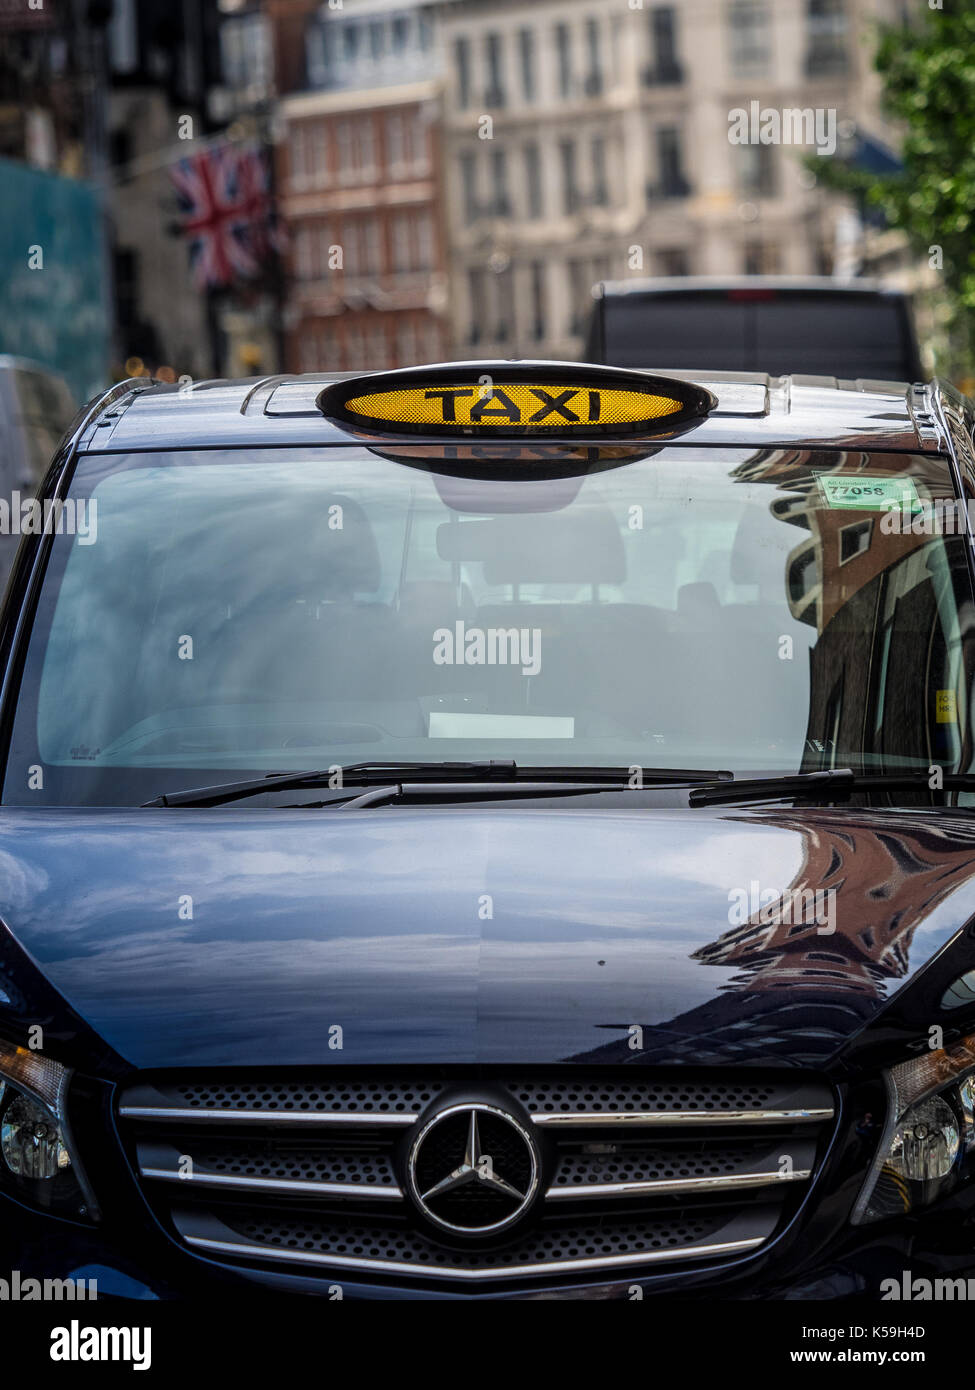 Mercedes Vito London Taxi I taxi neri - segni su una Mercedes Vito taxi in centro a Londra. Il Vito è un'alternativa al tradizionale Black Cab Foto Stock